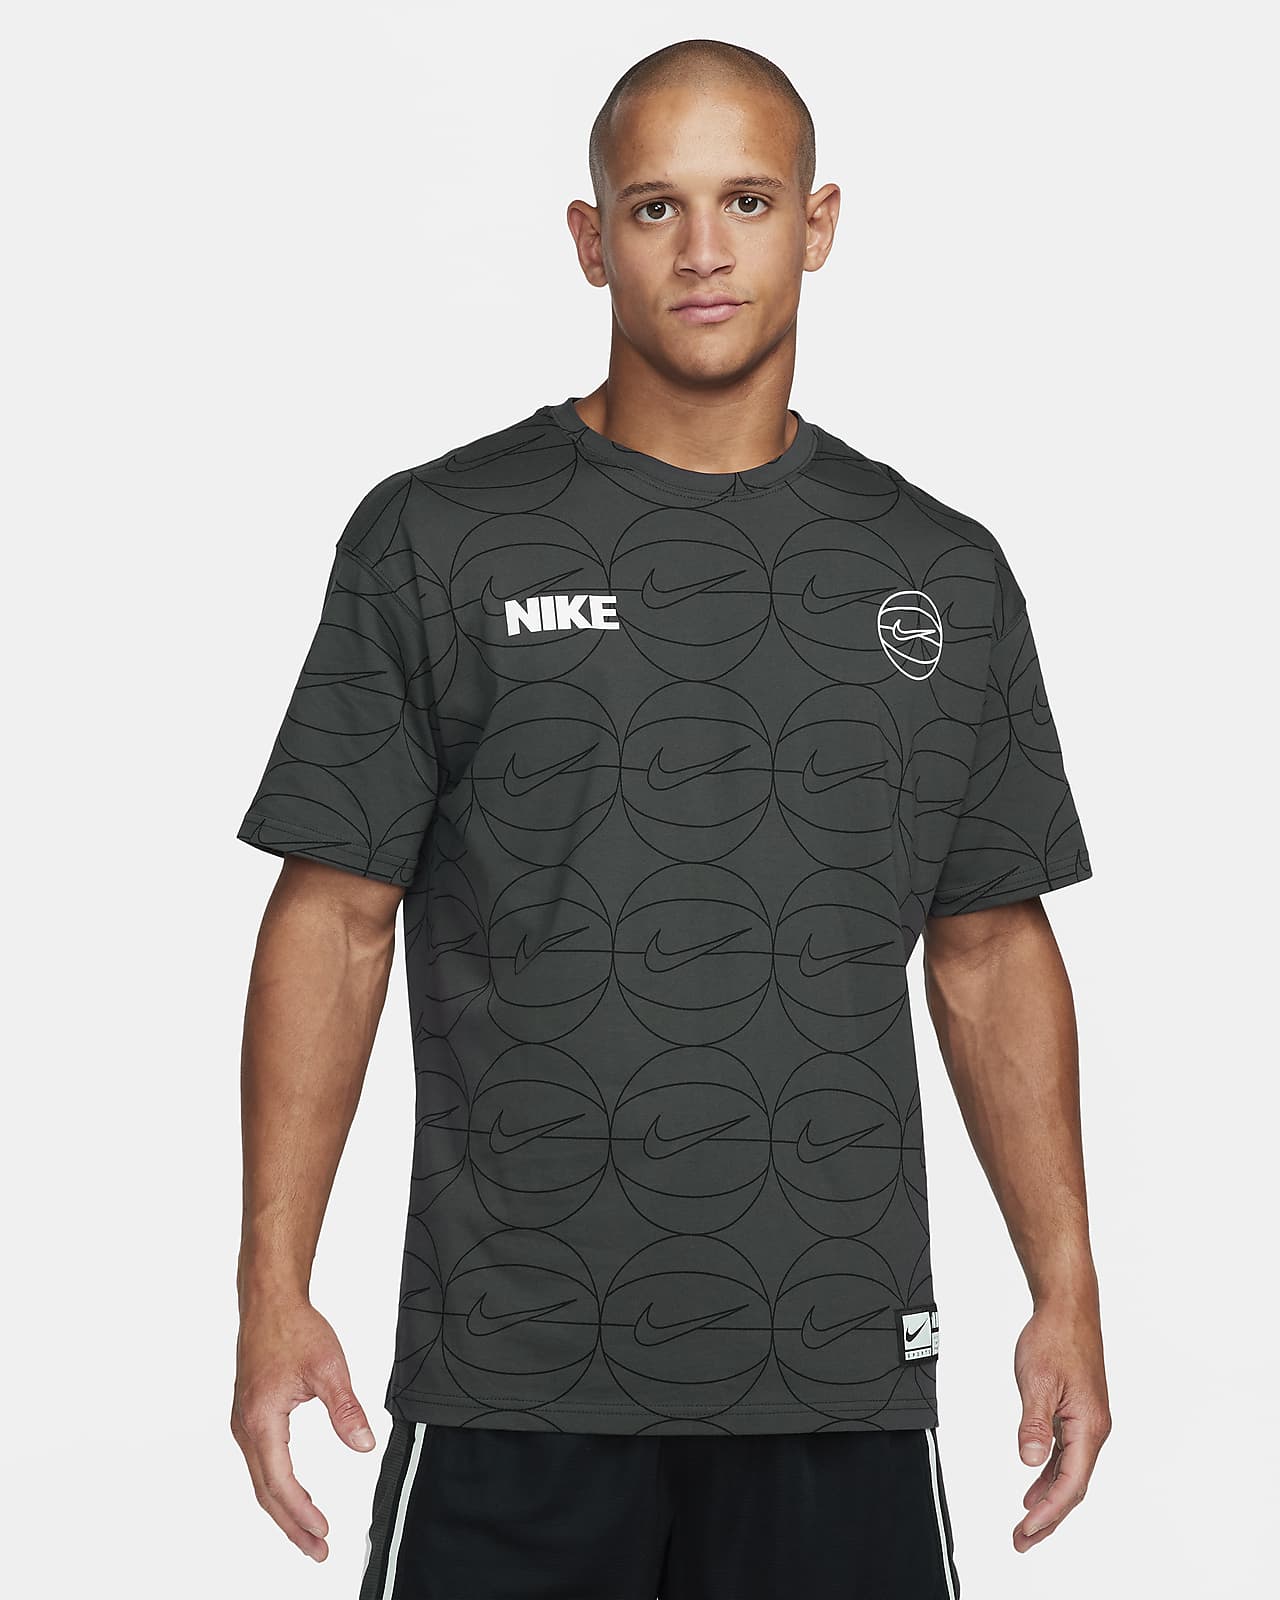 Nike Park Mens Dri-Fit Crew Sports Gym Football T Shirt Top Tee S-XXL